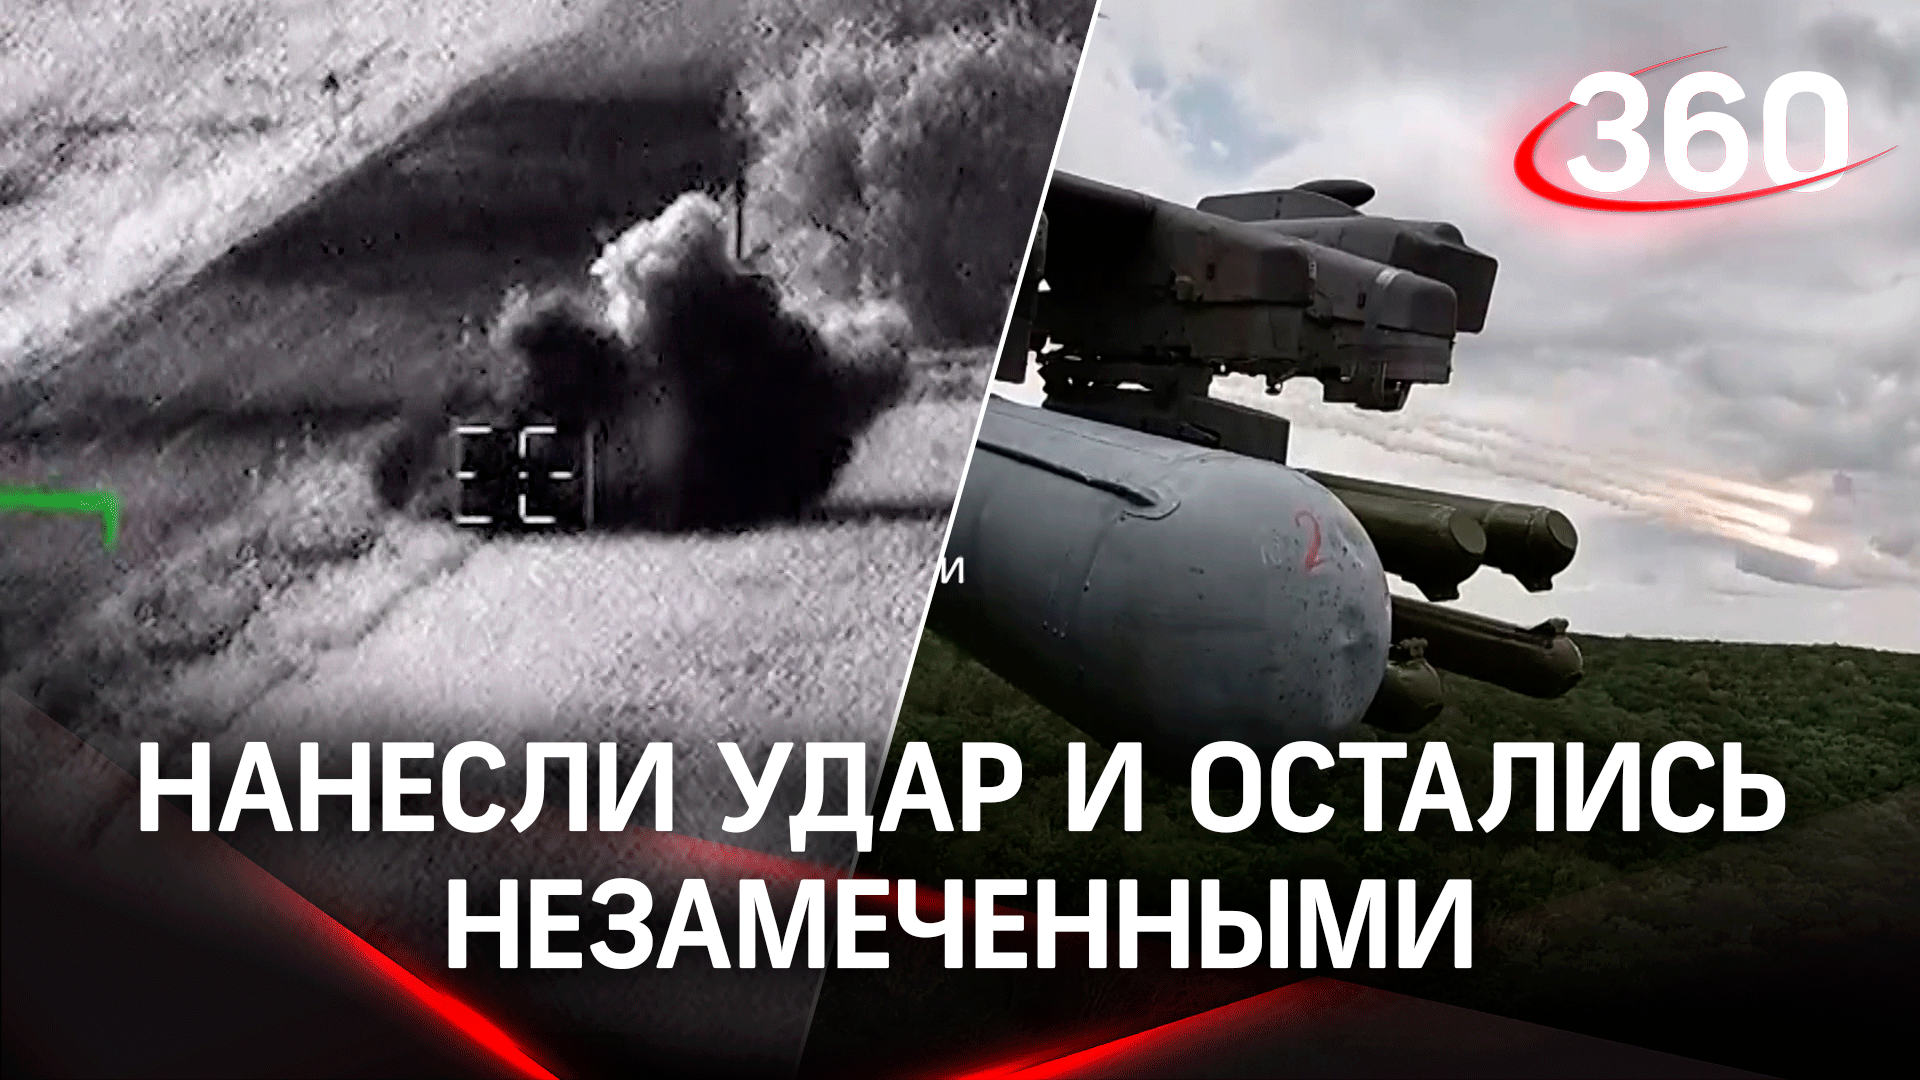 Прямое попадание: российские лётчики нанесли удар по пунктам ВСУ и остались незамеченными. Видео